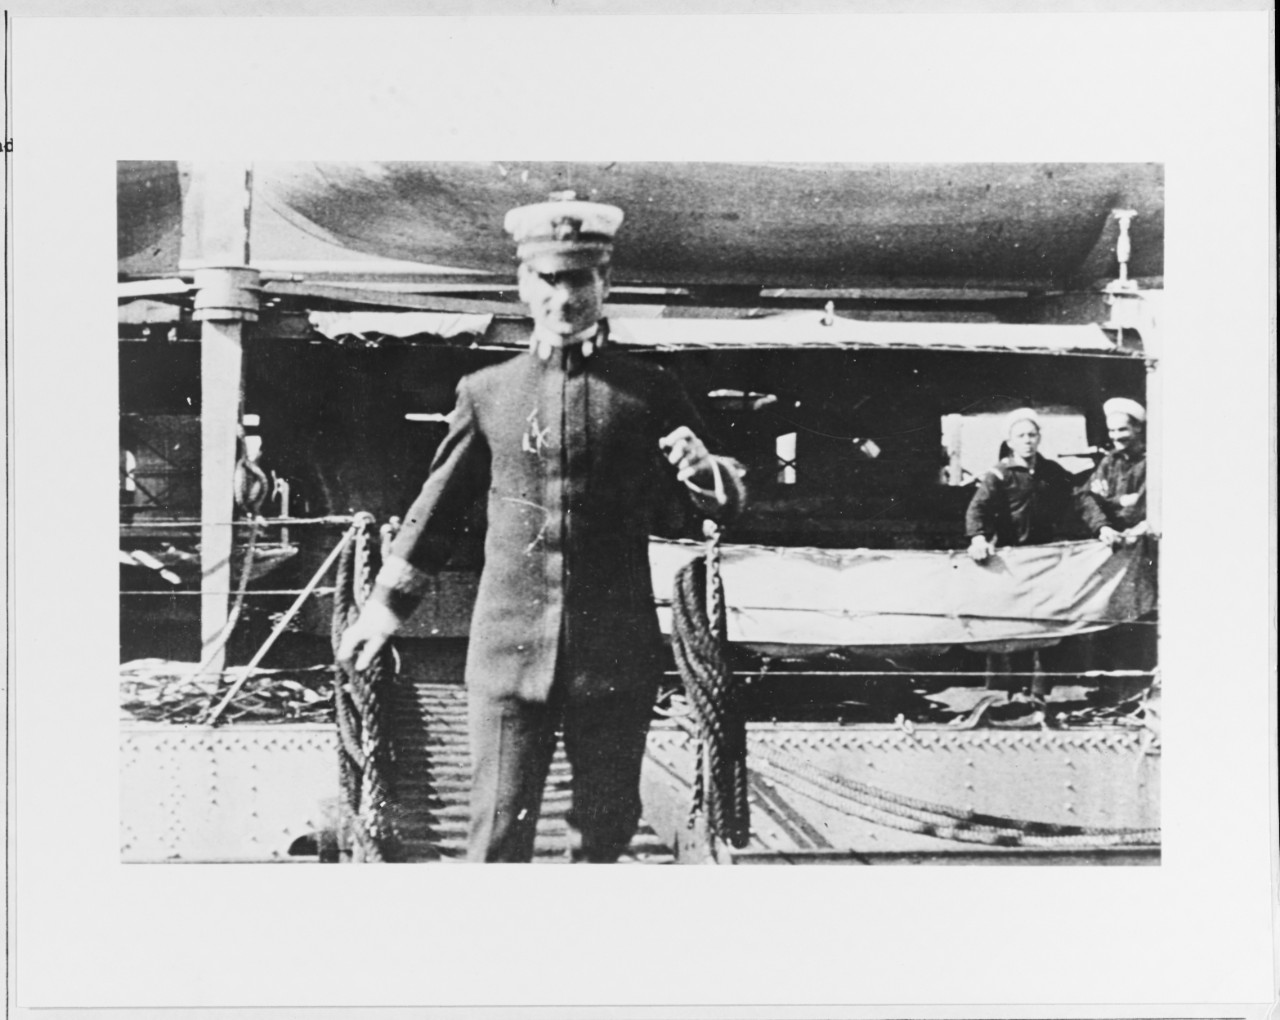 Commander Joseph K. Taussig